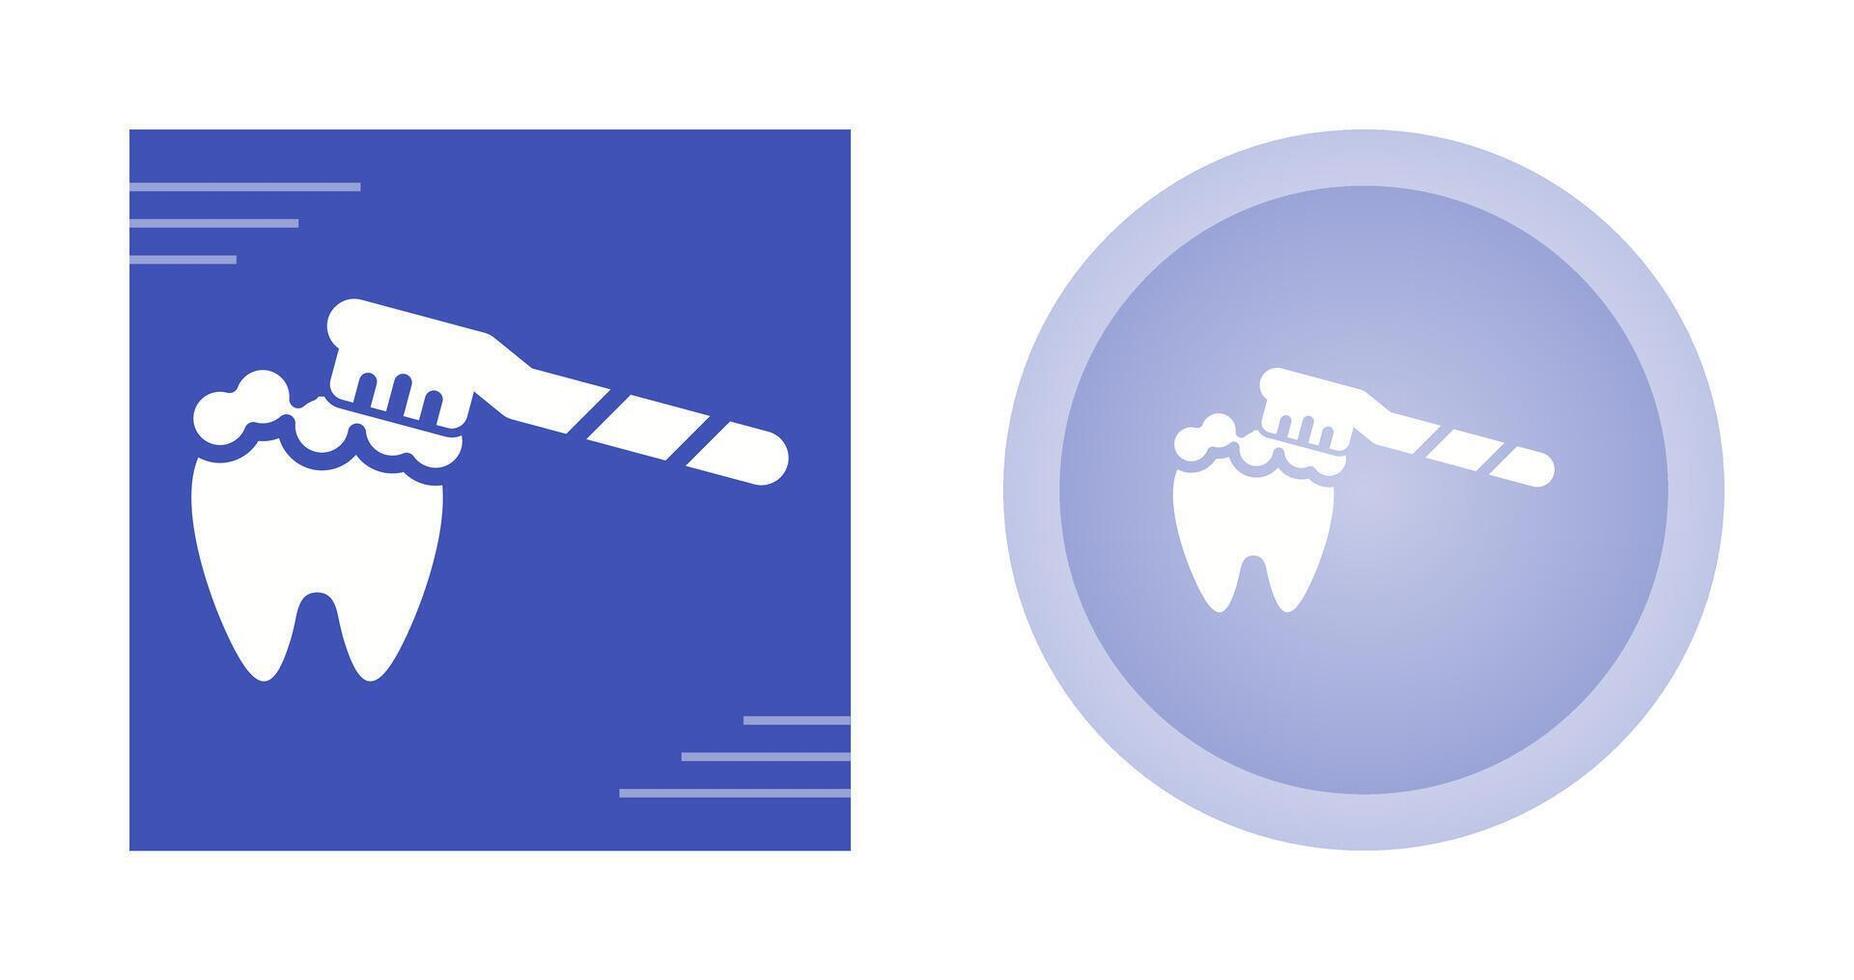 Brushing Teeth Vector Icon